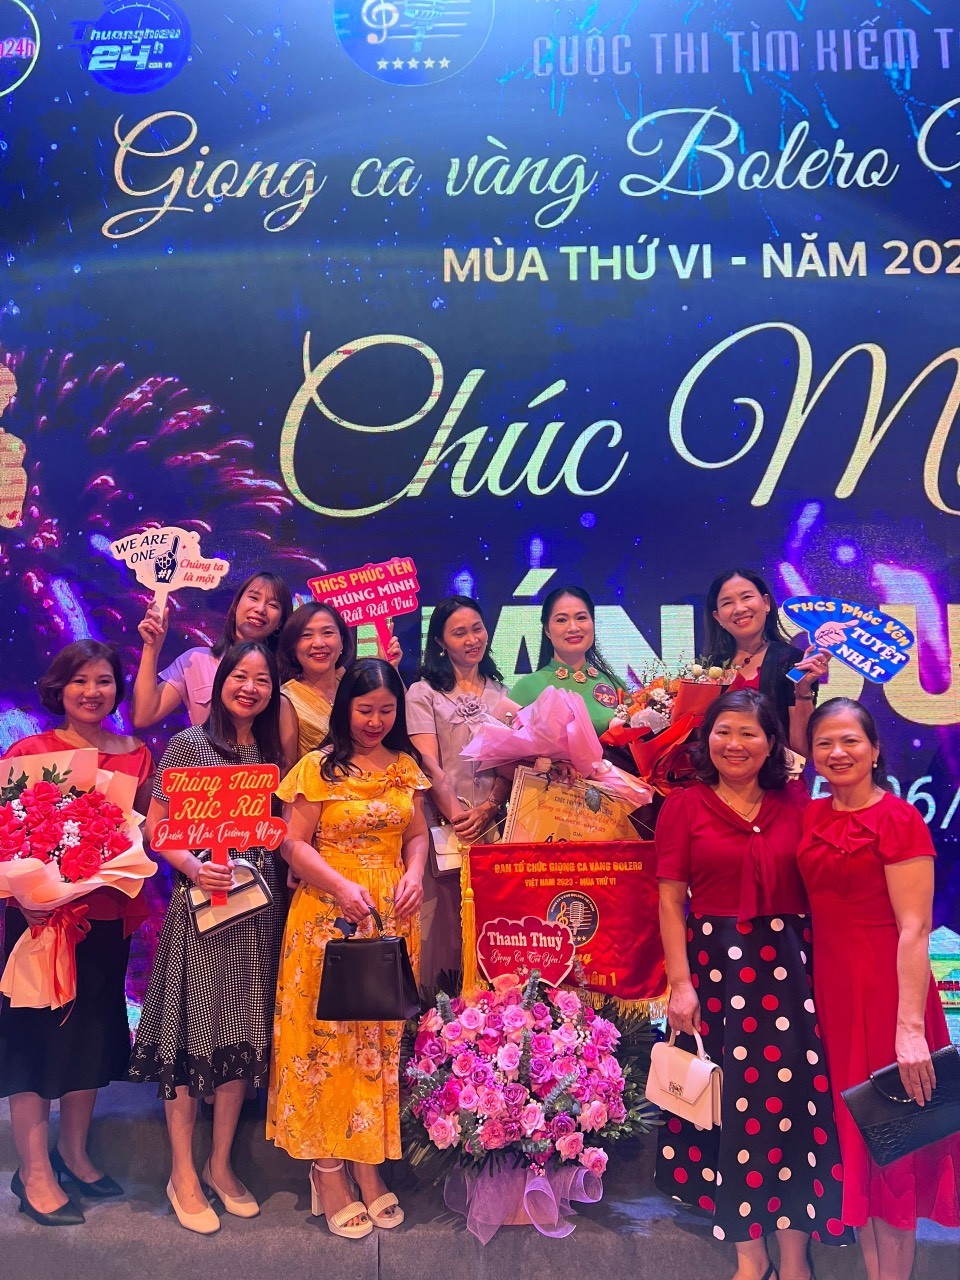 Bạn bè đến cổ vũ, chúc mừng chị Thanh Thủy trong đêm chung kết Giọng ca vàng Bolero Việt Nam 2023